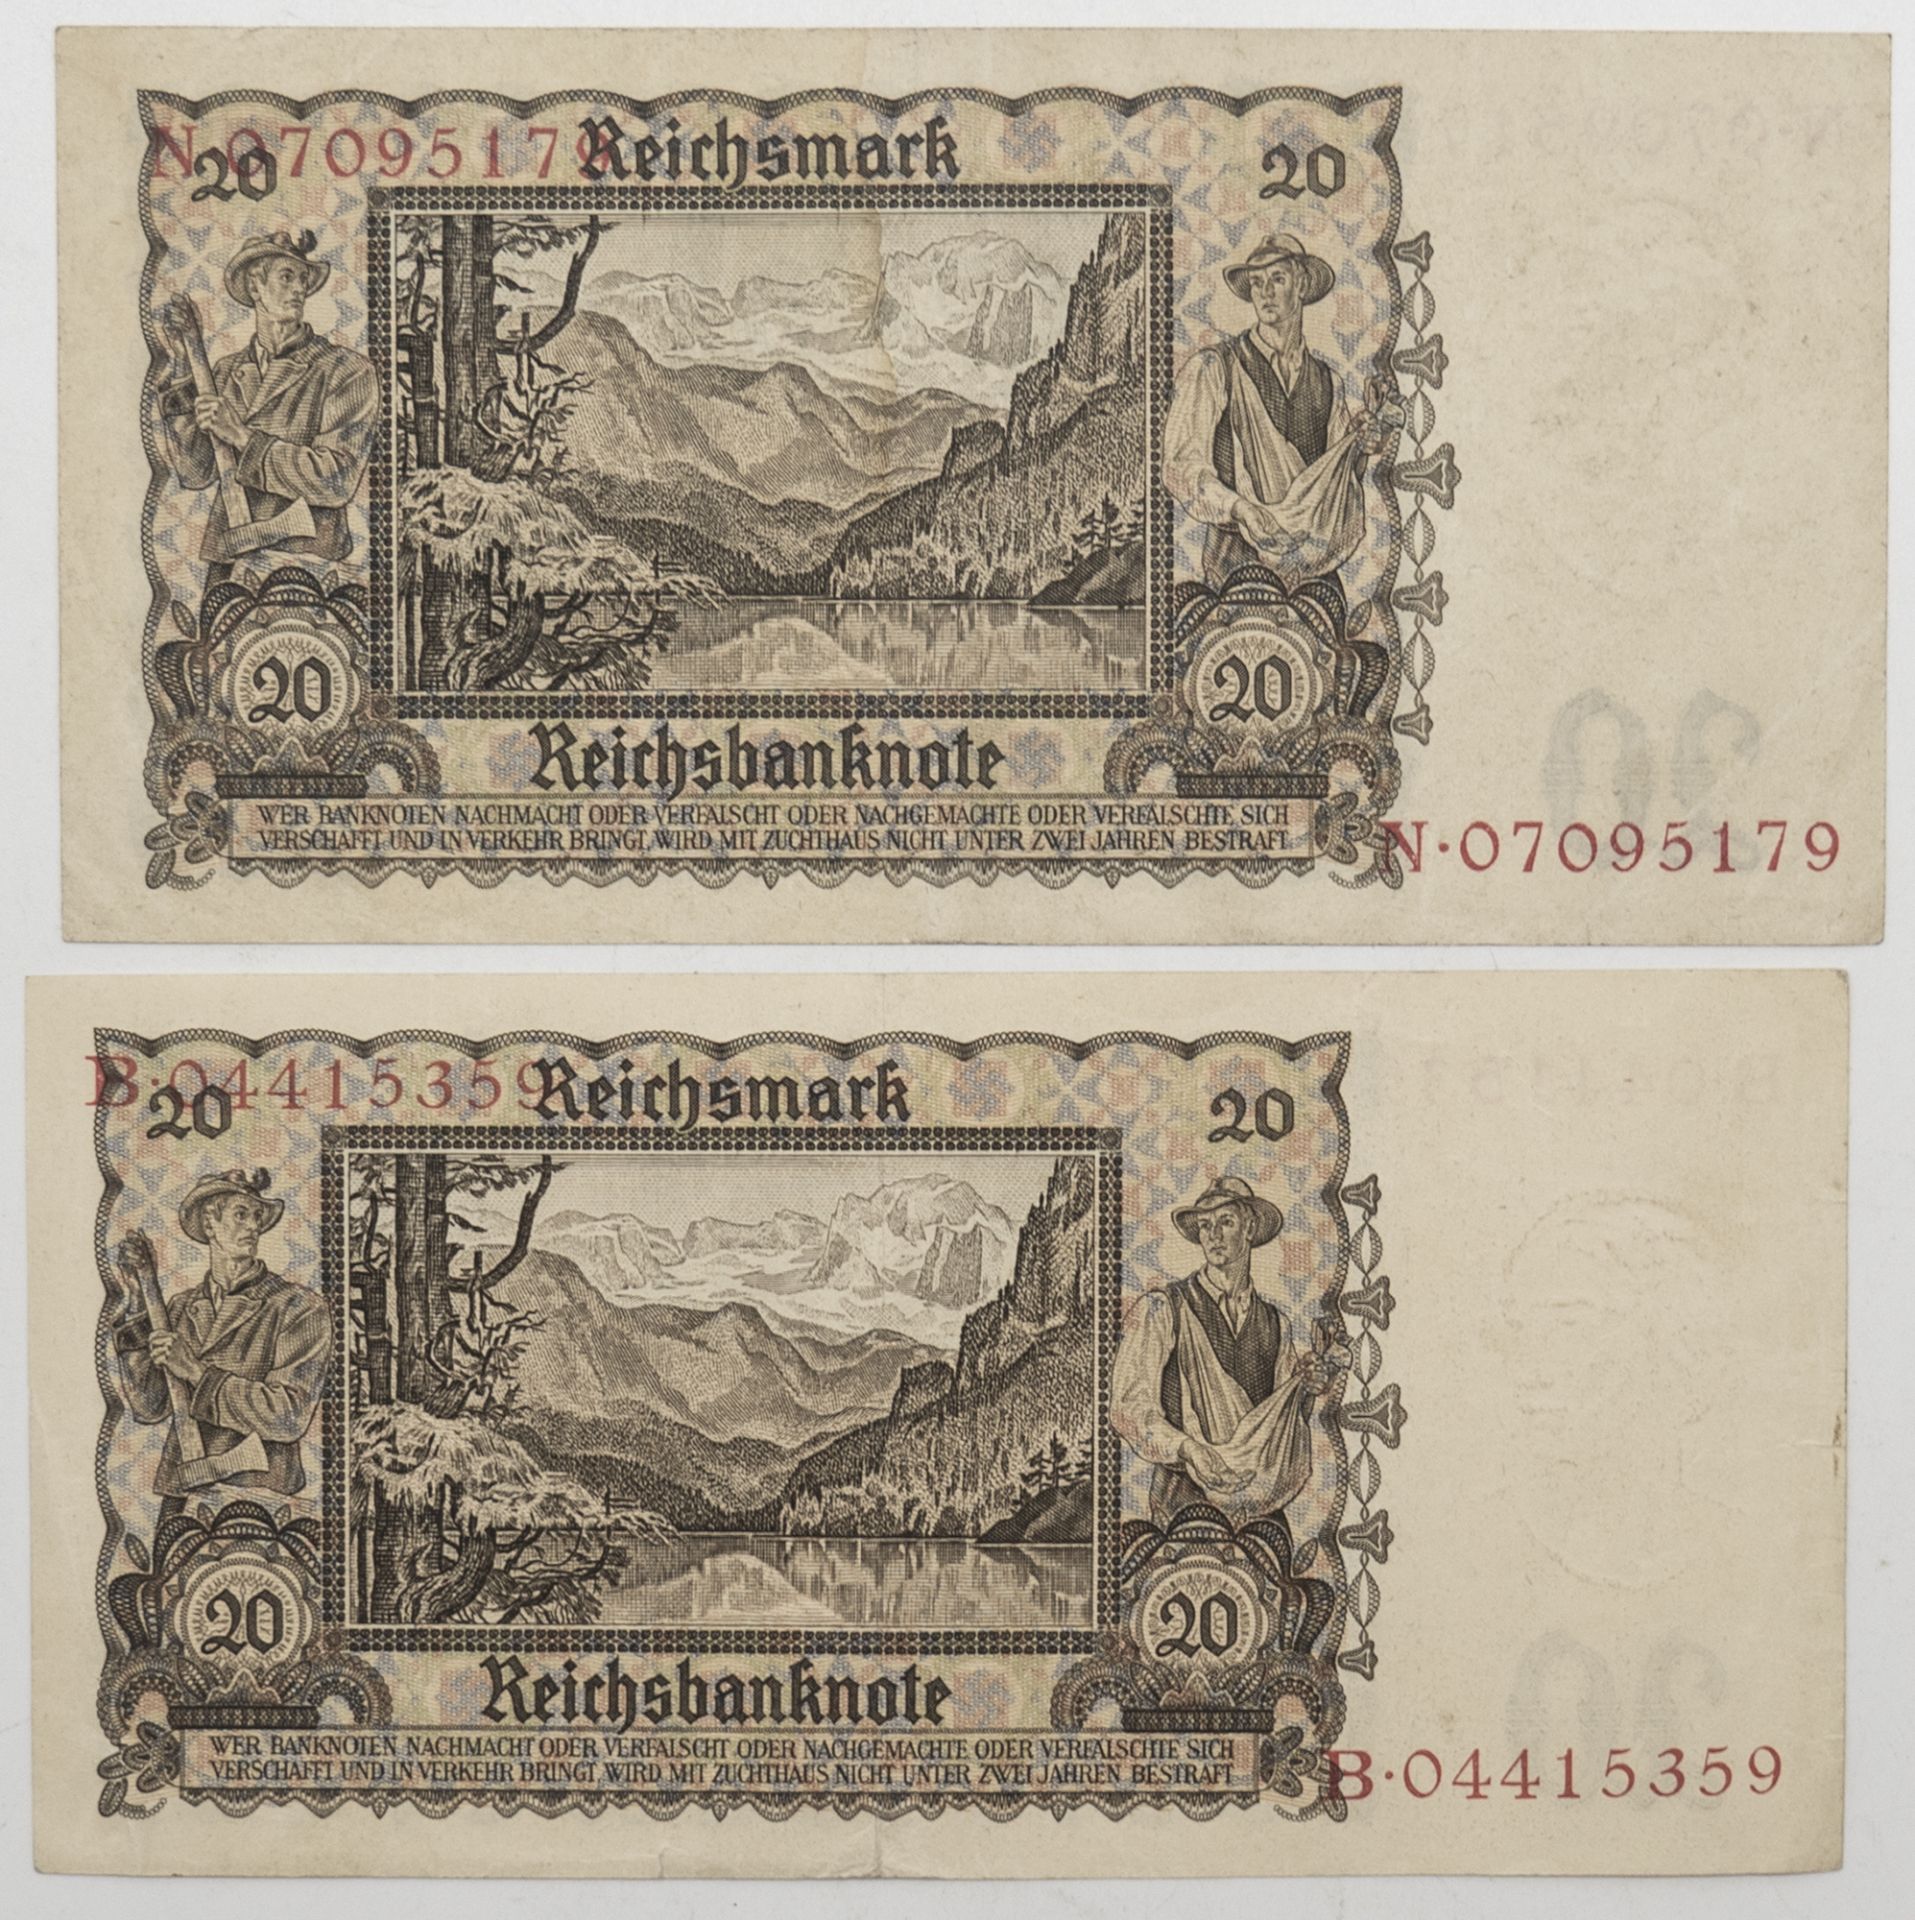 Drittes Reich 1942, zwei 20.- Reichsmark - Banknoten. Erhaltung: vz. - Bild 2 aus 2